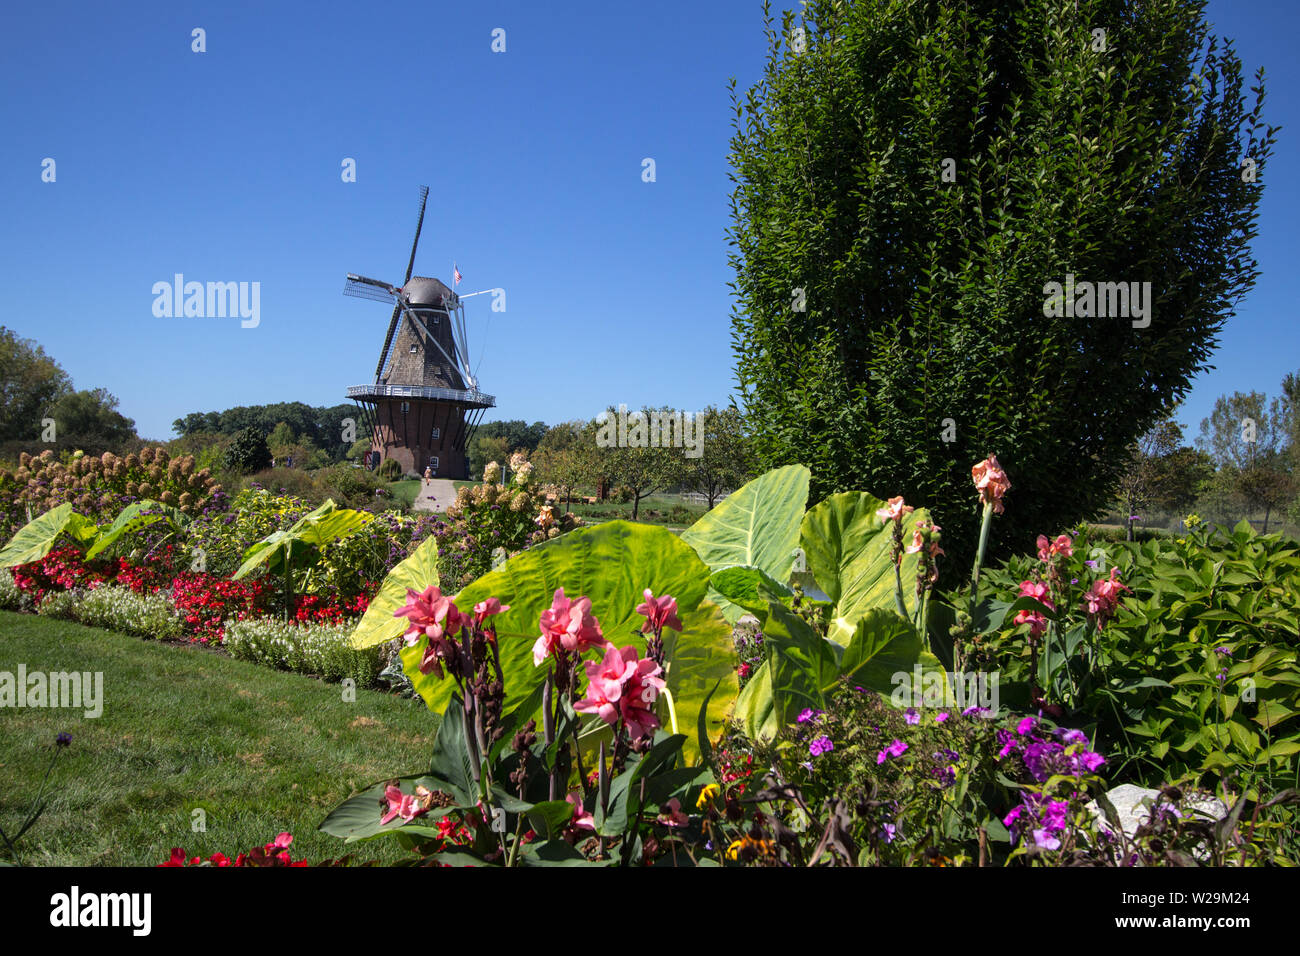 Die älteste authentische holländische Windmühle in Amerika ist in Holland, Michigan gelegen Es ist das Herzstück Tulip Time Festival, das Tausende zeichnet. Stockfoto